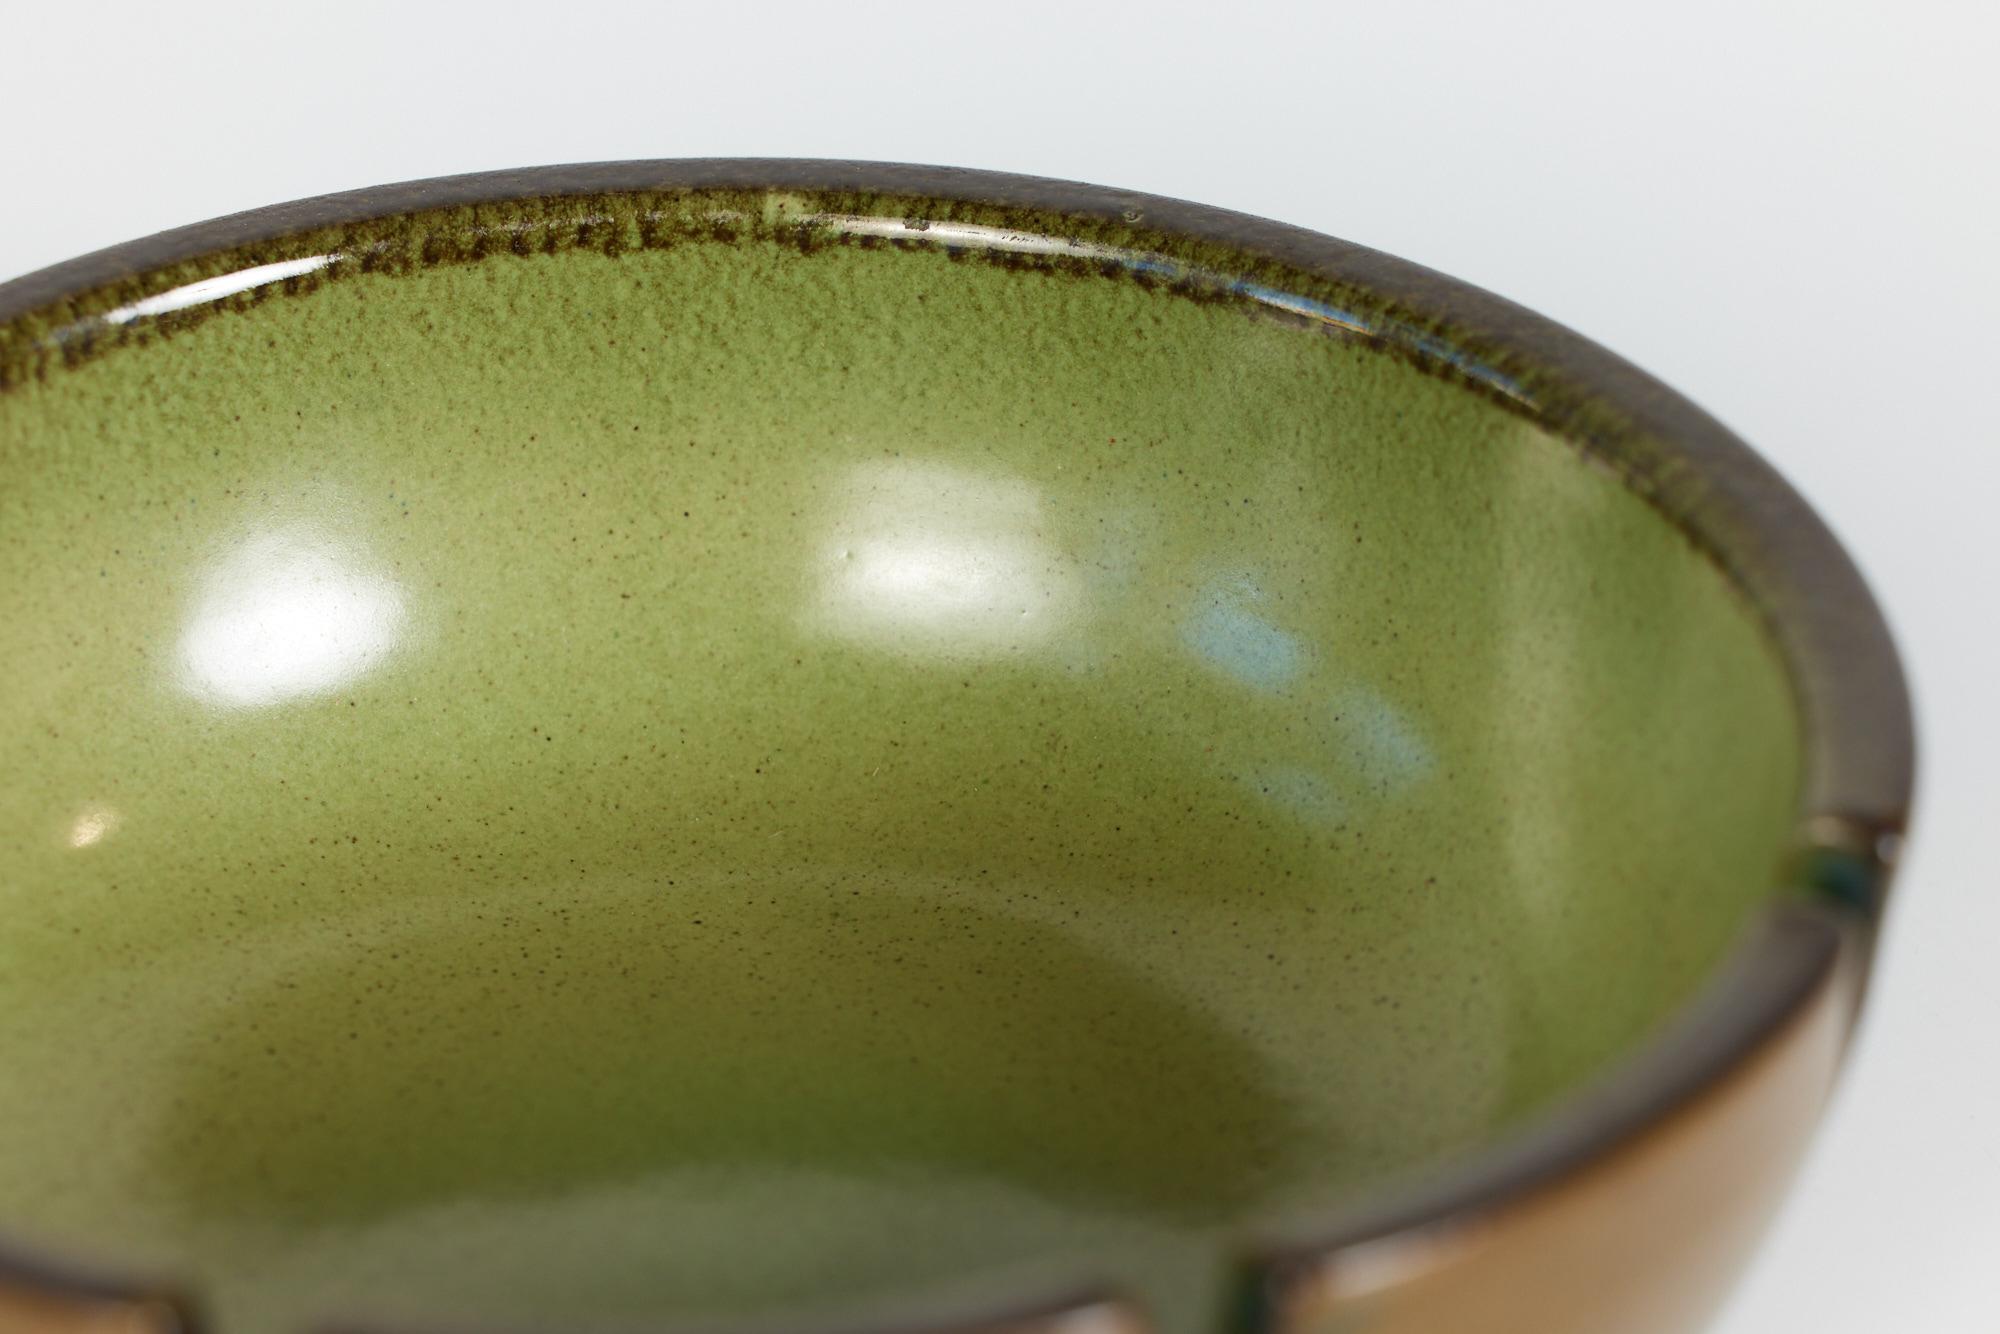 Heath Ceramics Green Glazed Ashtray 4